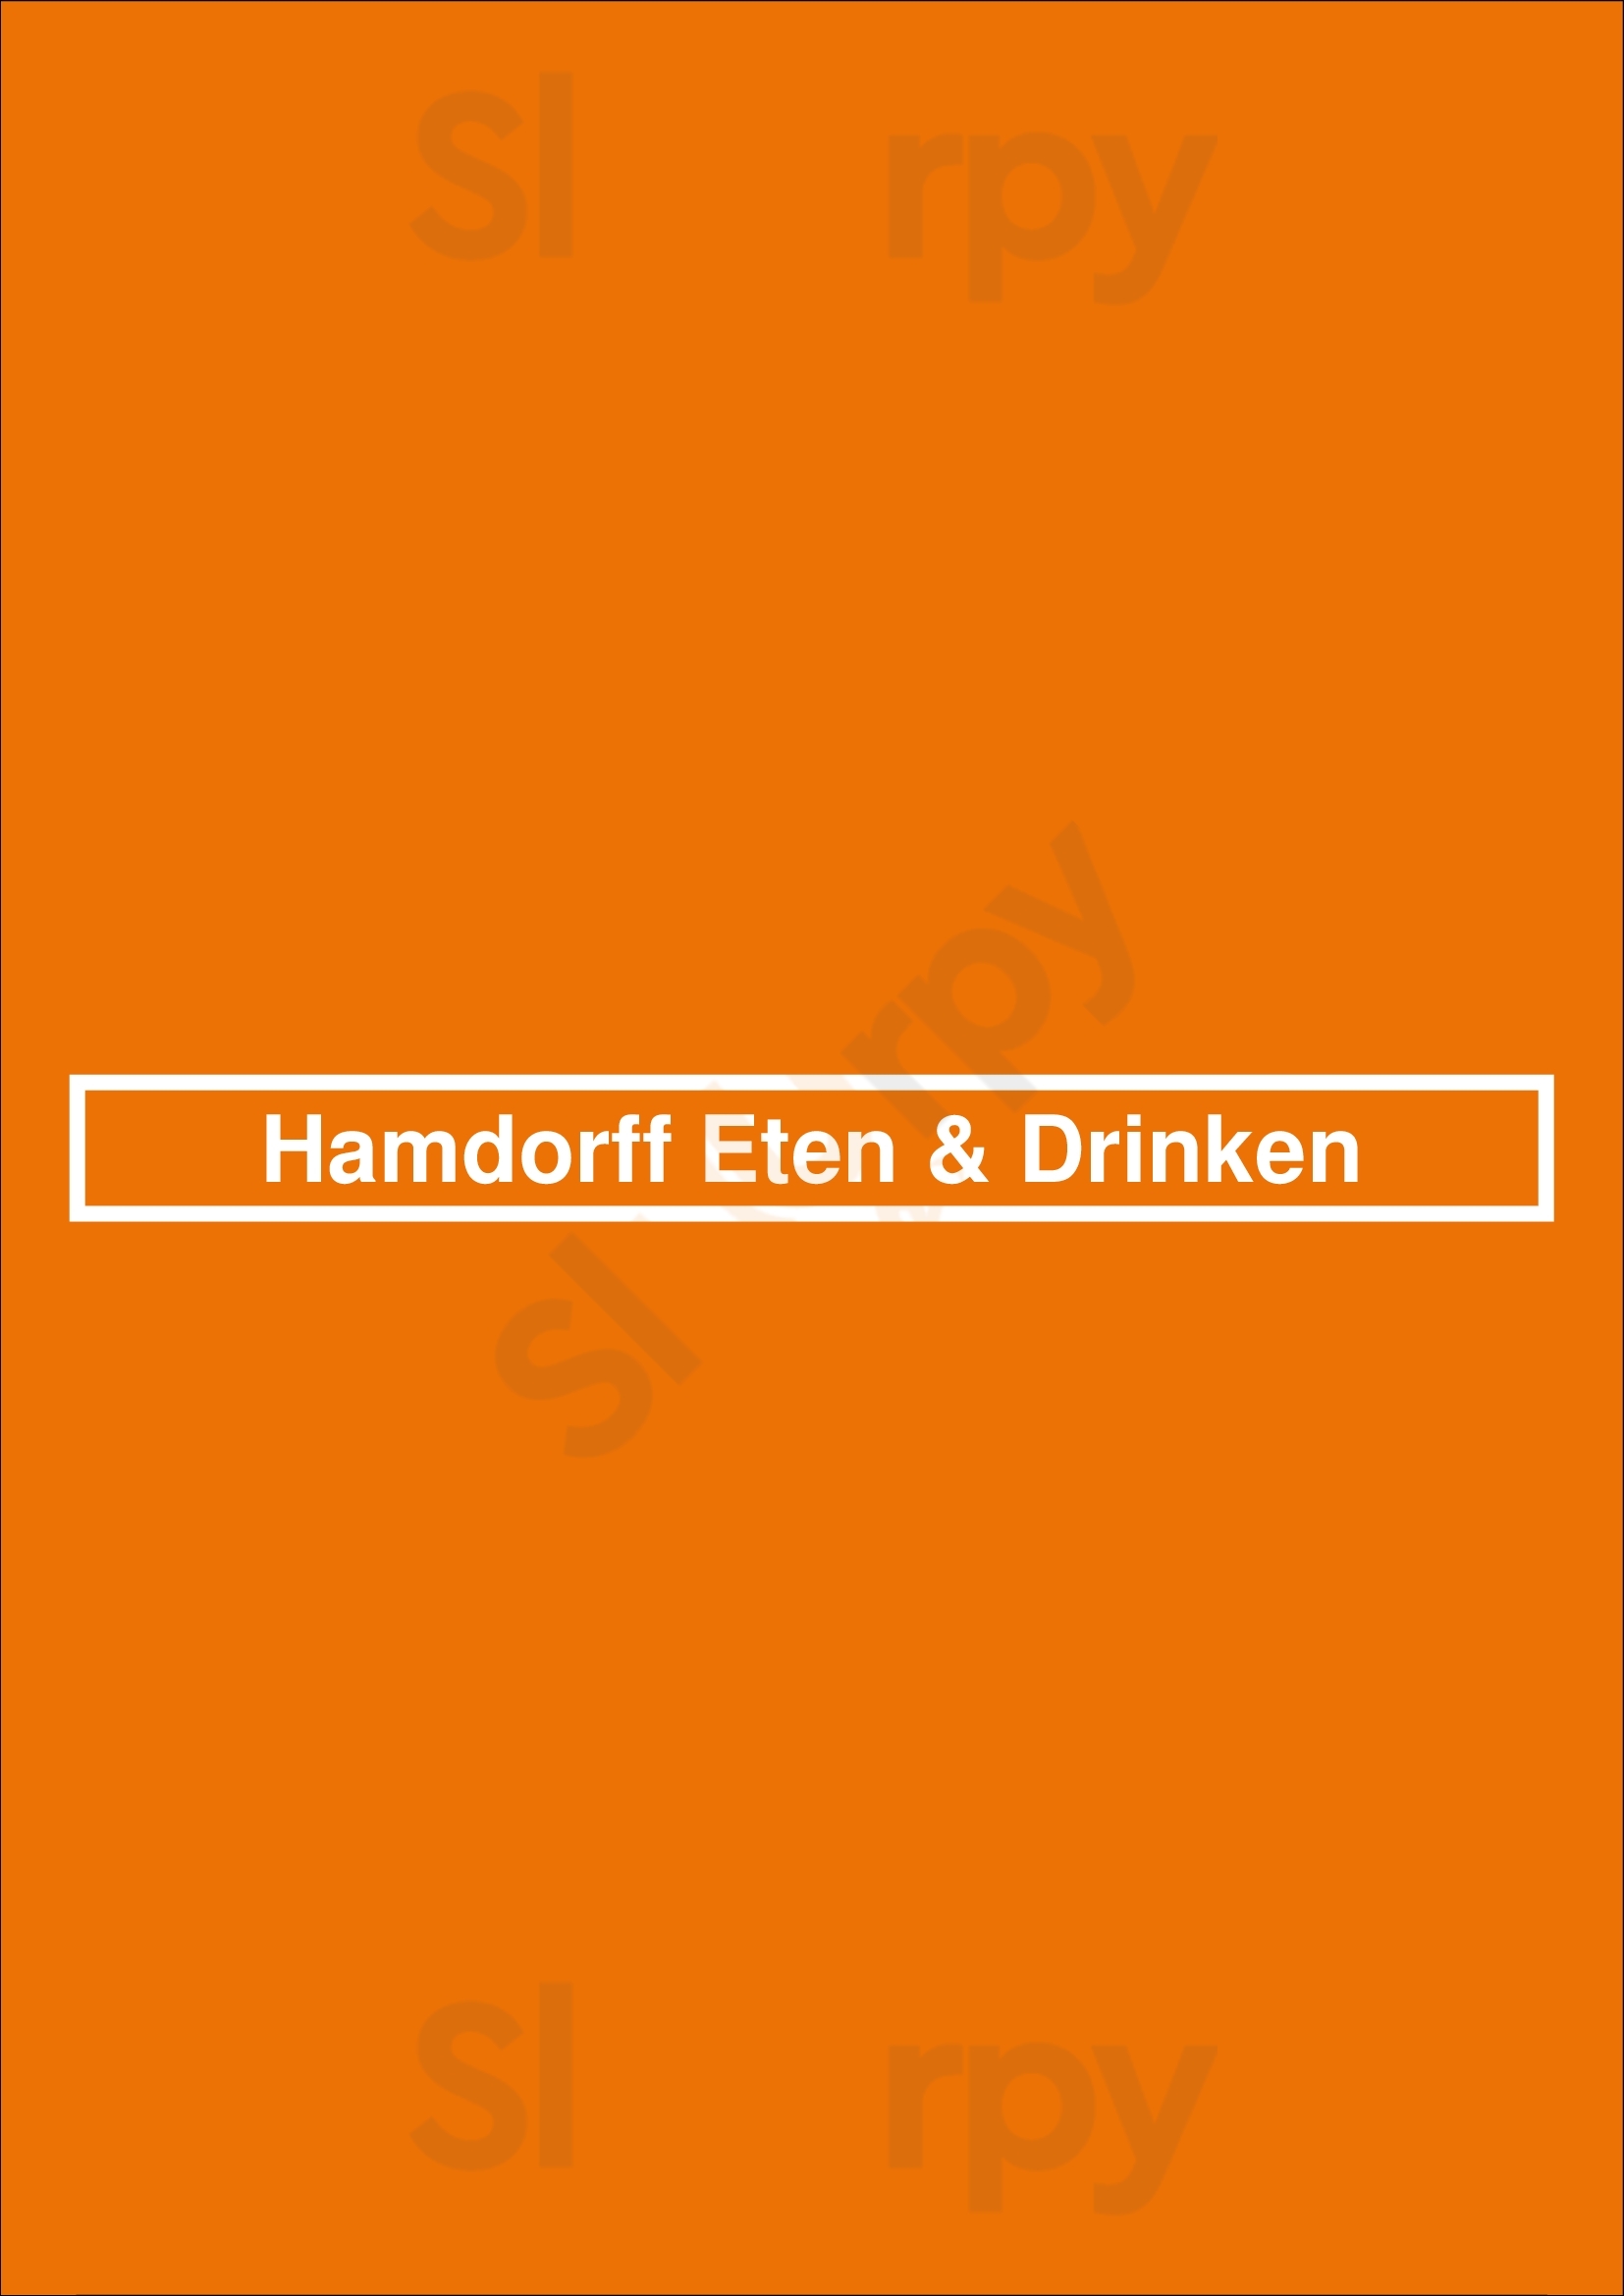 Hamdorff Eten & Drinken Laren Menu - 1